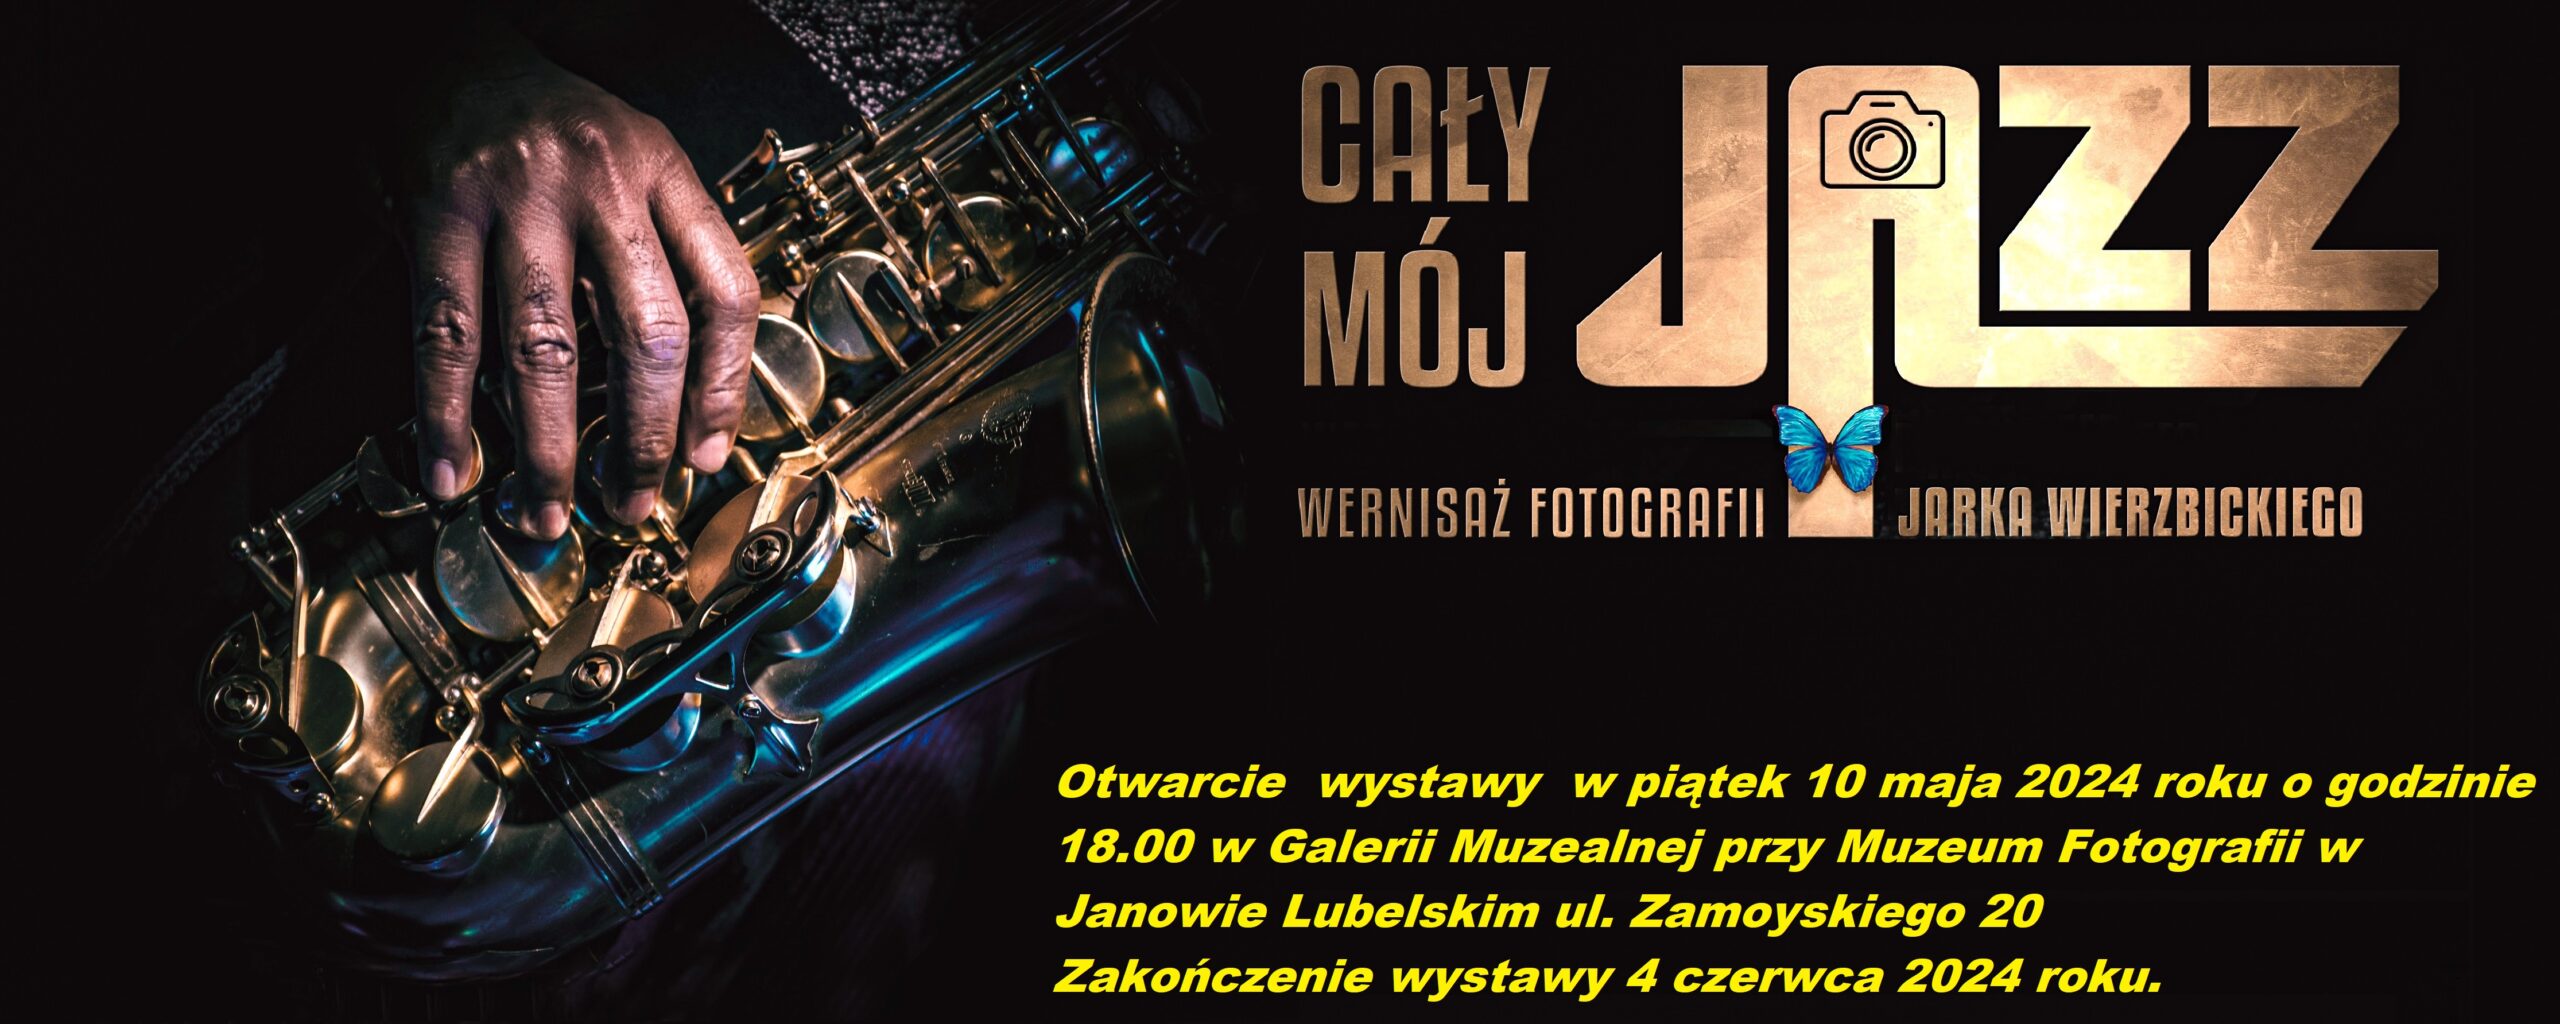 „Cały mój jazz” – kolejny wernisaż wystawy w Muzeum Fotografii